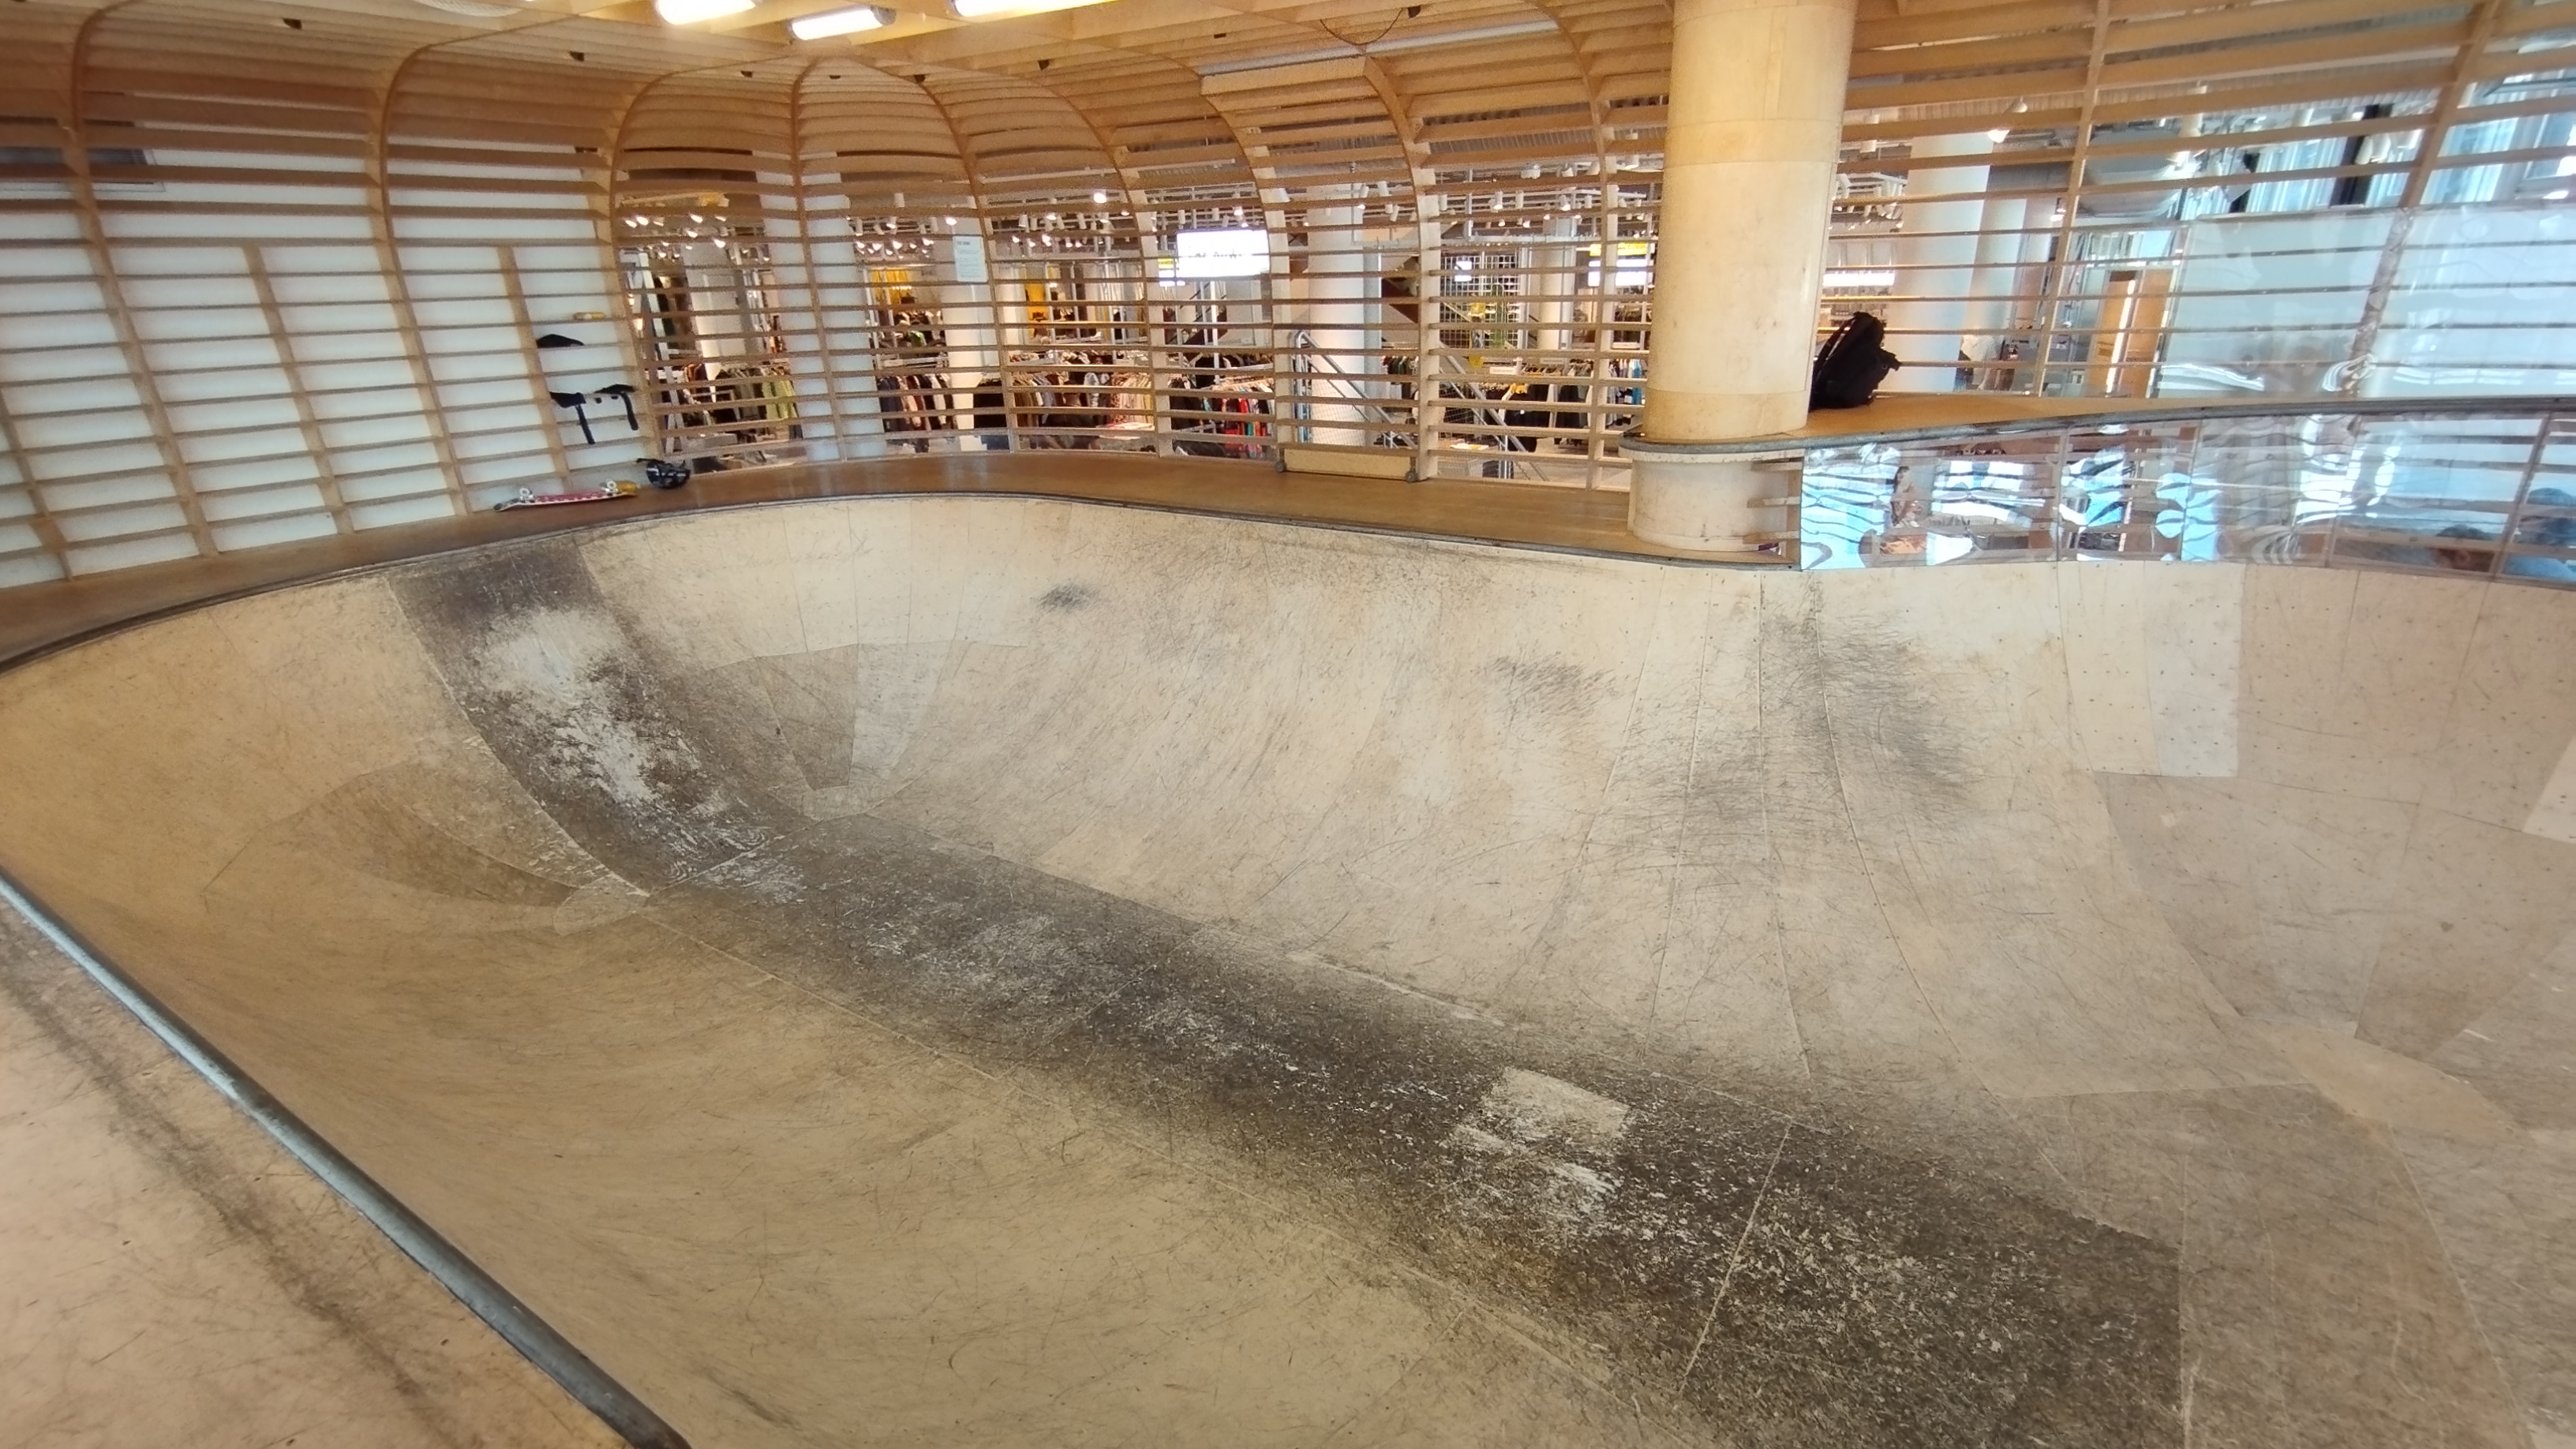 The bowl skatepark